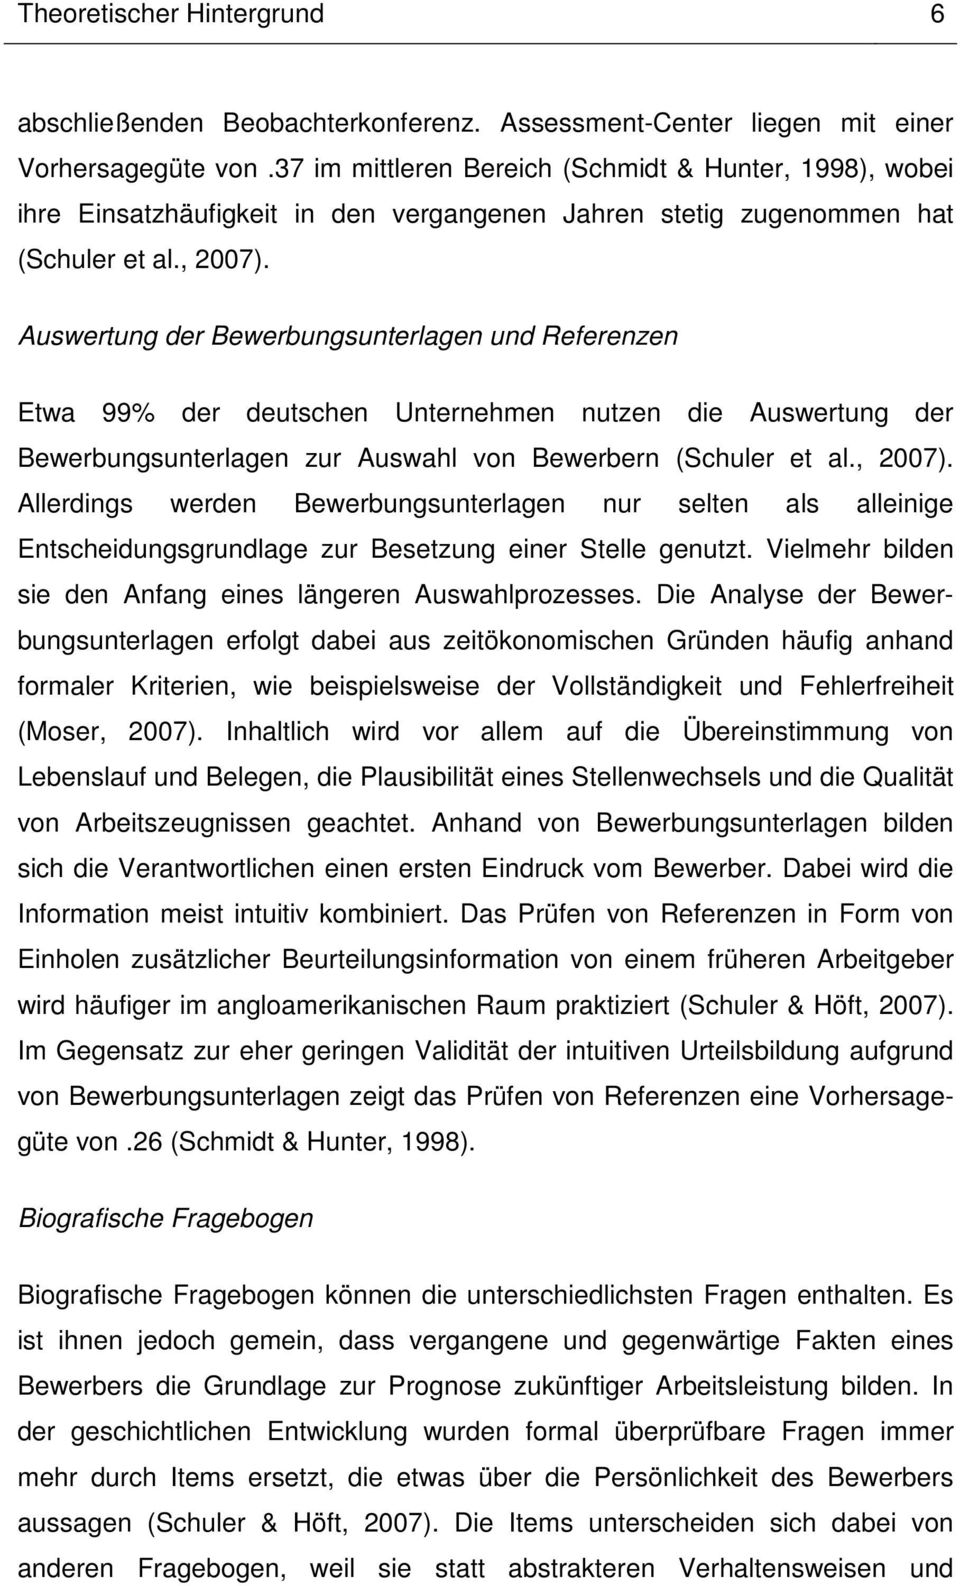 Auswertung der Bewerbungsunterlagen und Referenzen Etwa 99% der deutschen Unternehmen nutzen die Auswertung der Bewerbungsunterlagen zur Auswahl von Bewerbern (Schuler et al., 2007).